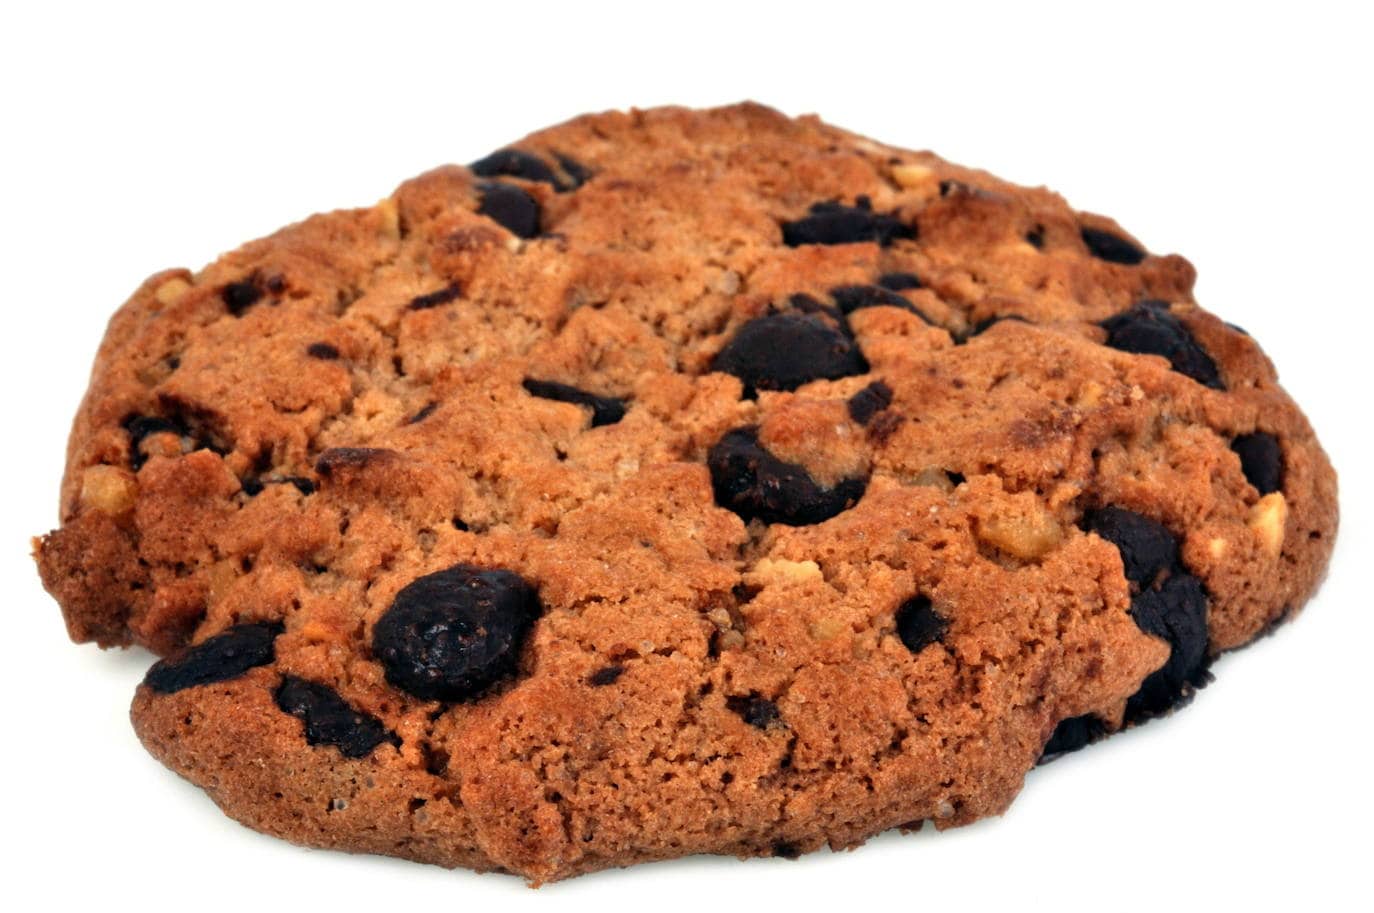 Alerta alimentaria: retiran estas galletas de Mercadona por la presencia de avellana no declarada